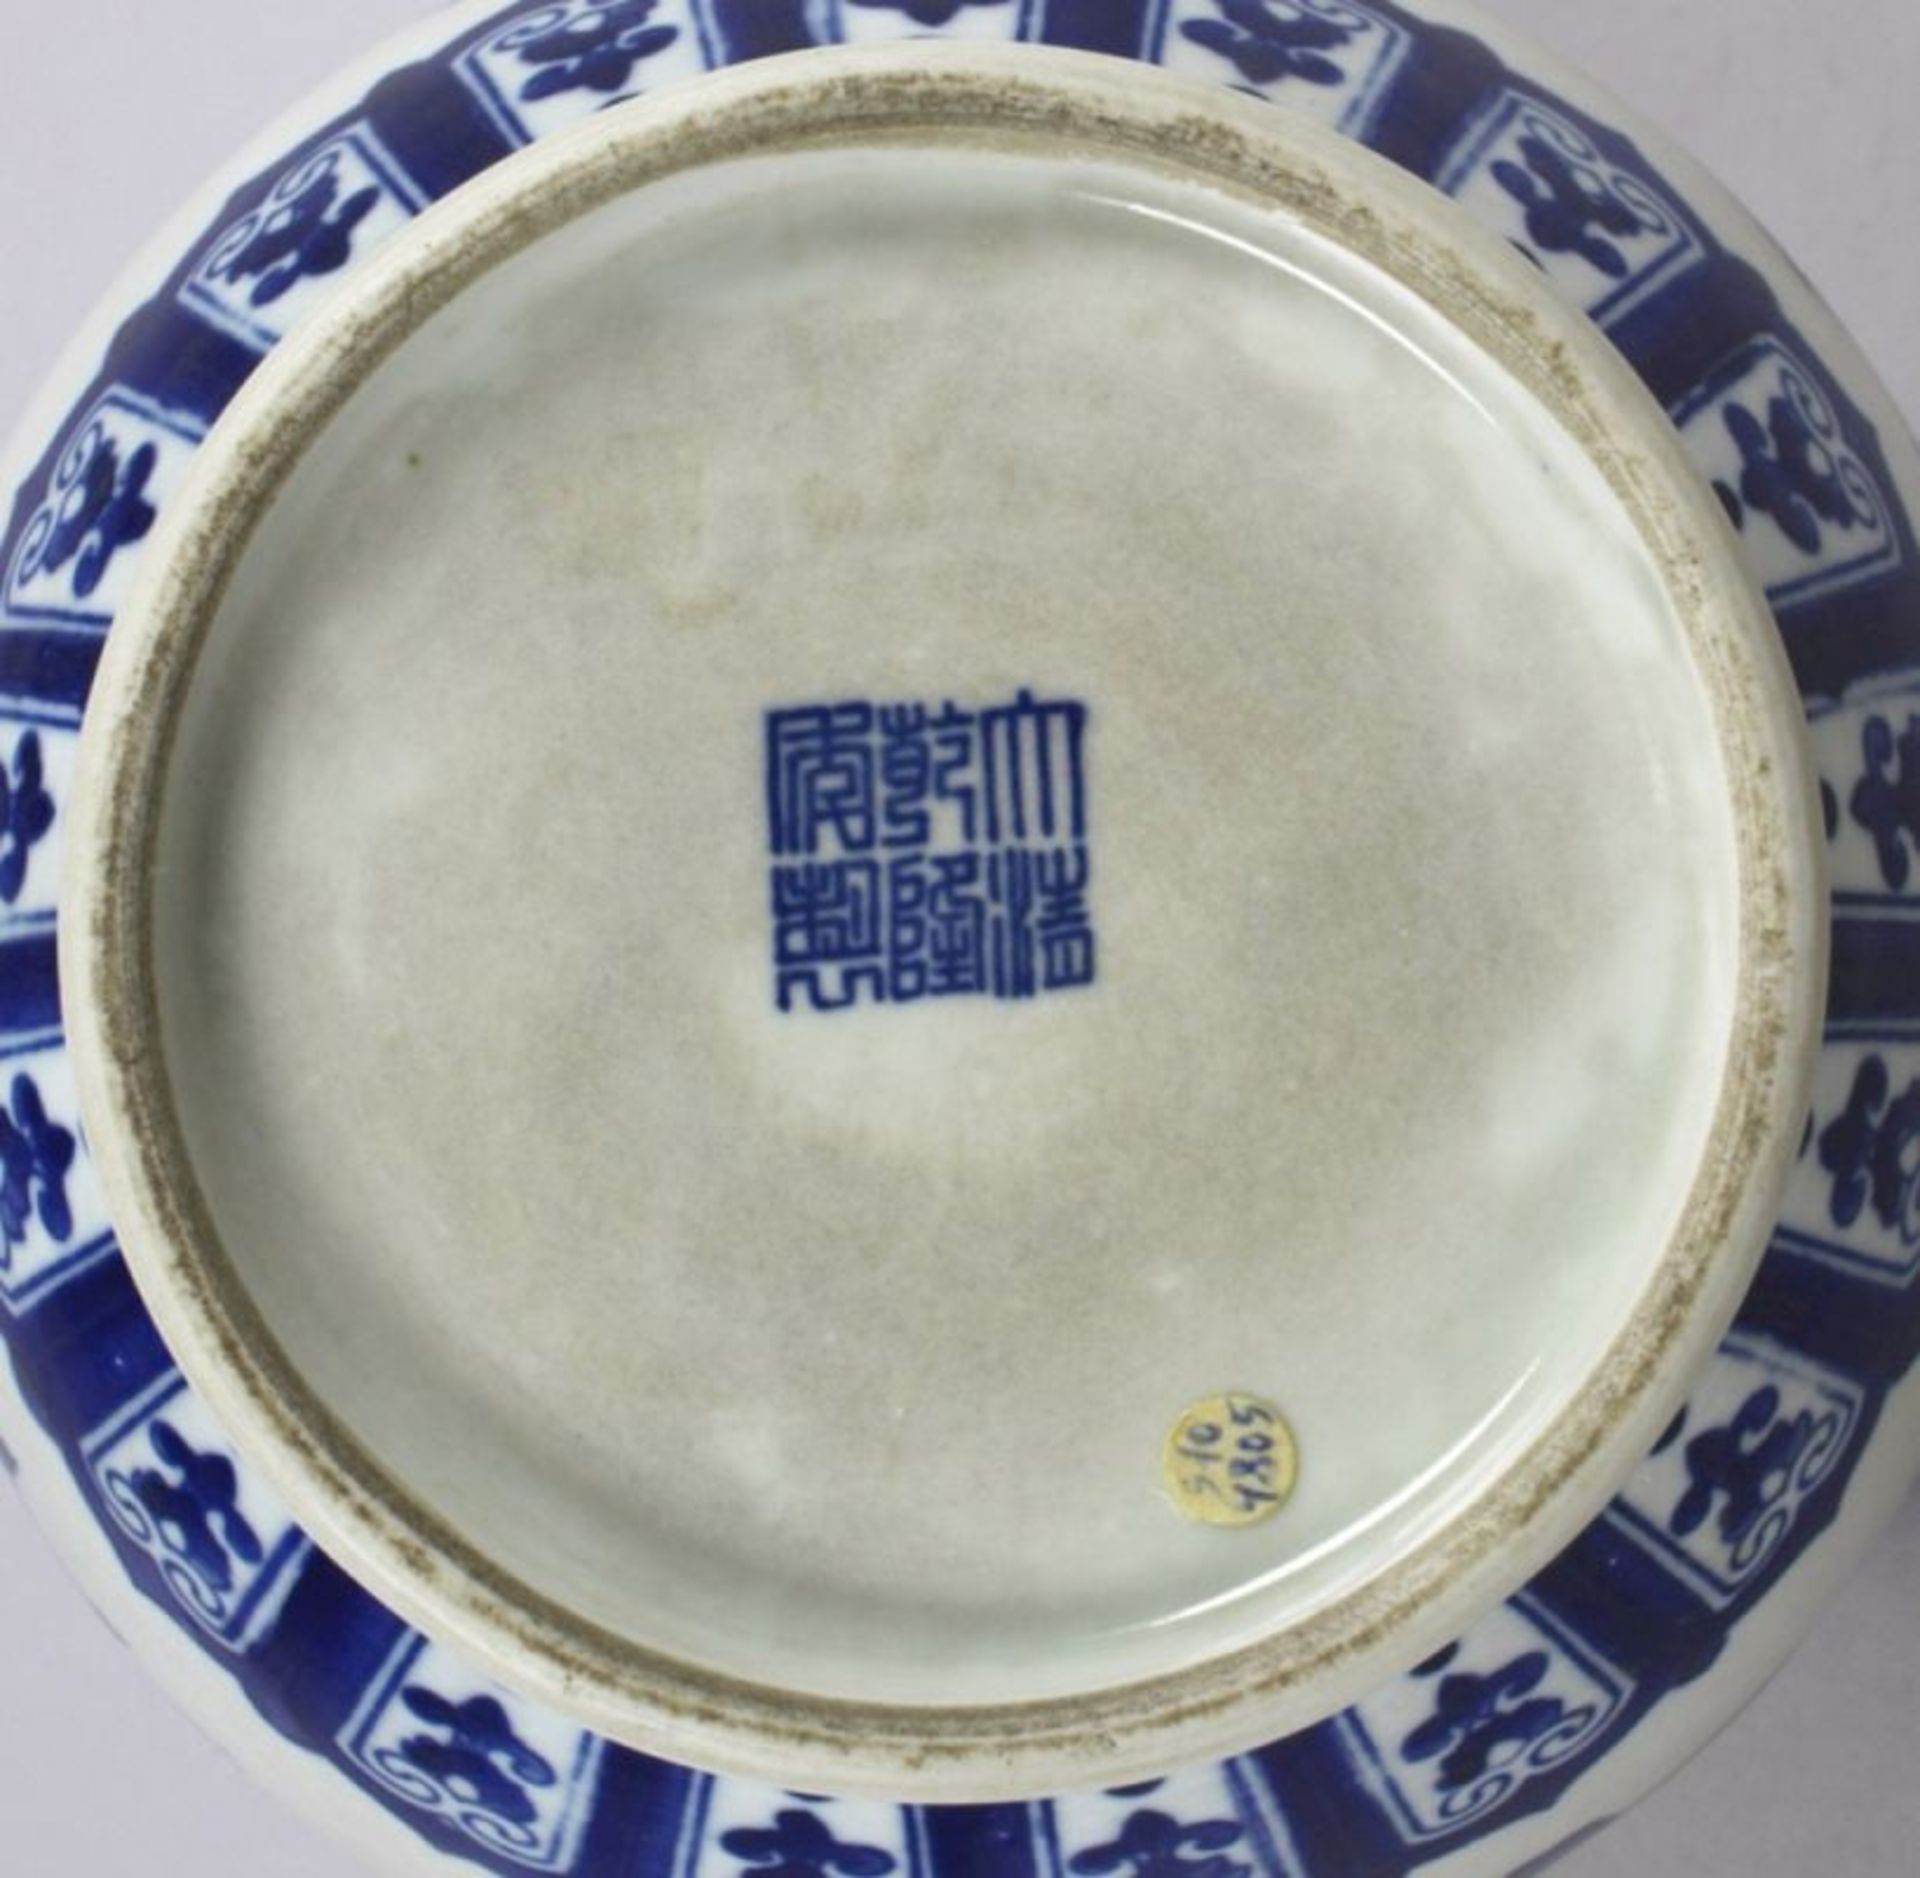 Porzellan-Ziervase, China, 19./20. Jh., über eingezogenem Rundstand tropfenförmiggebauchter Korpus - Bild 5 aus 5